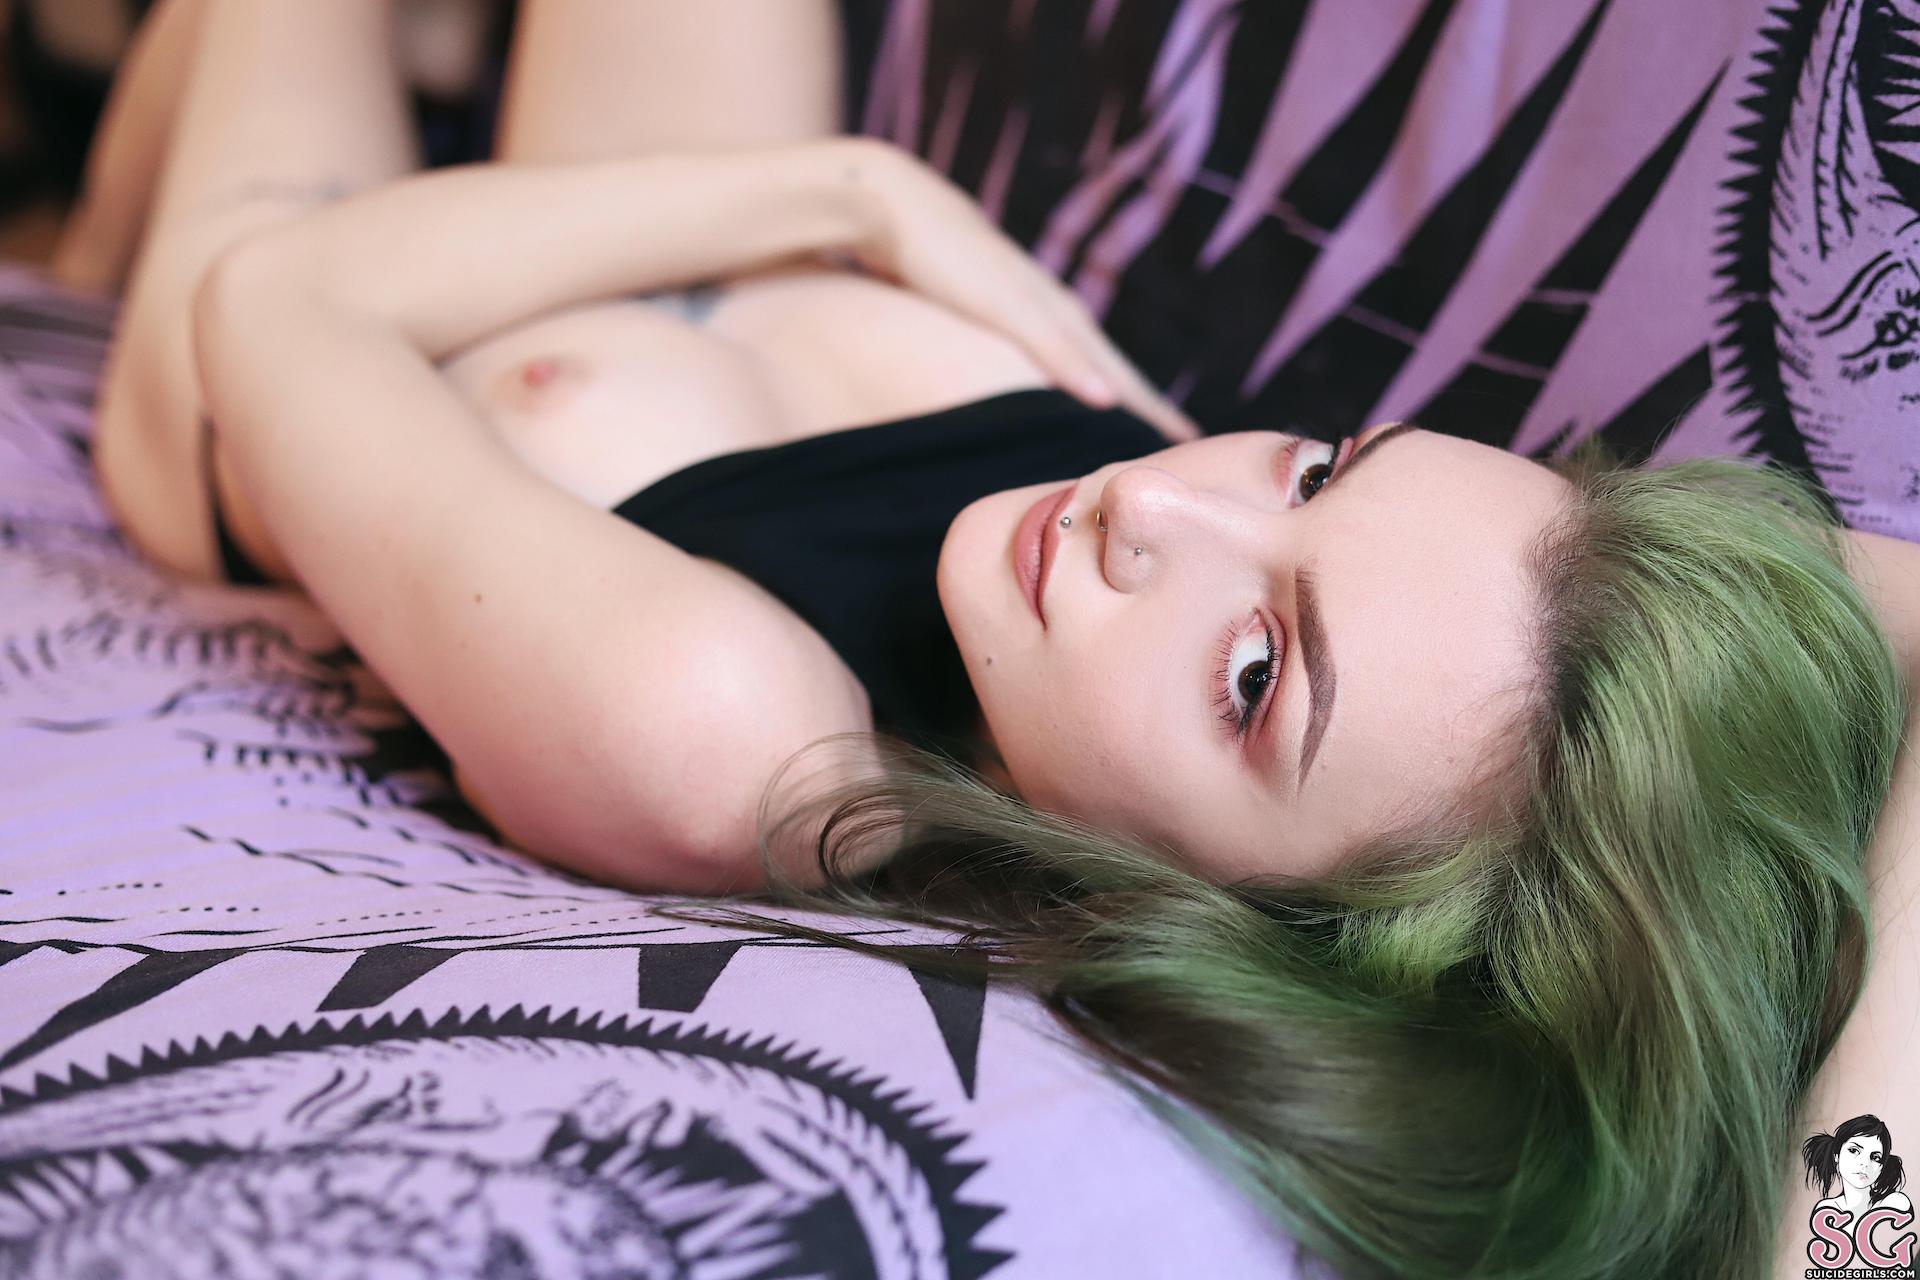 Зеленые волосы и красивые сиськи